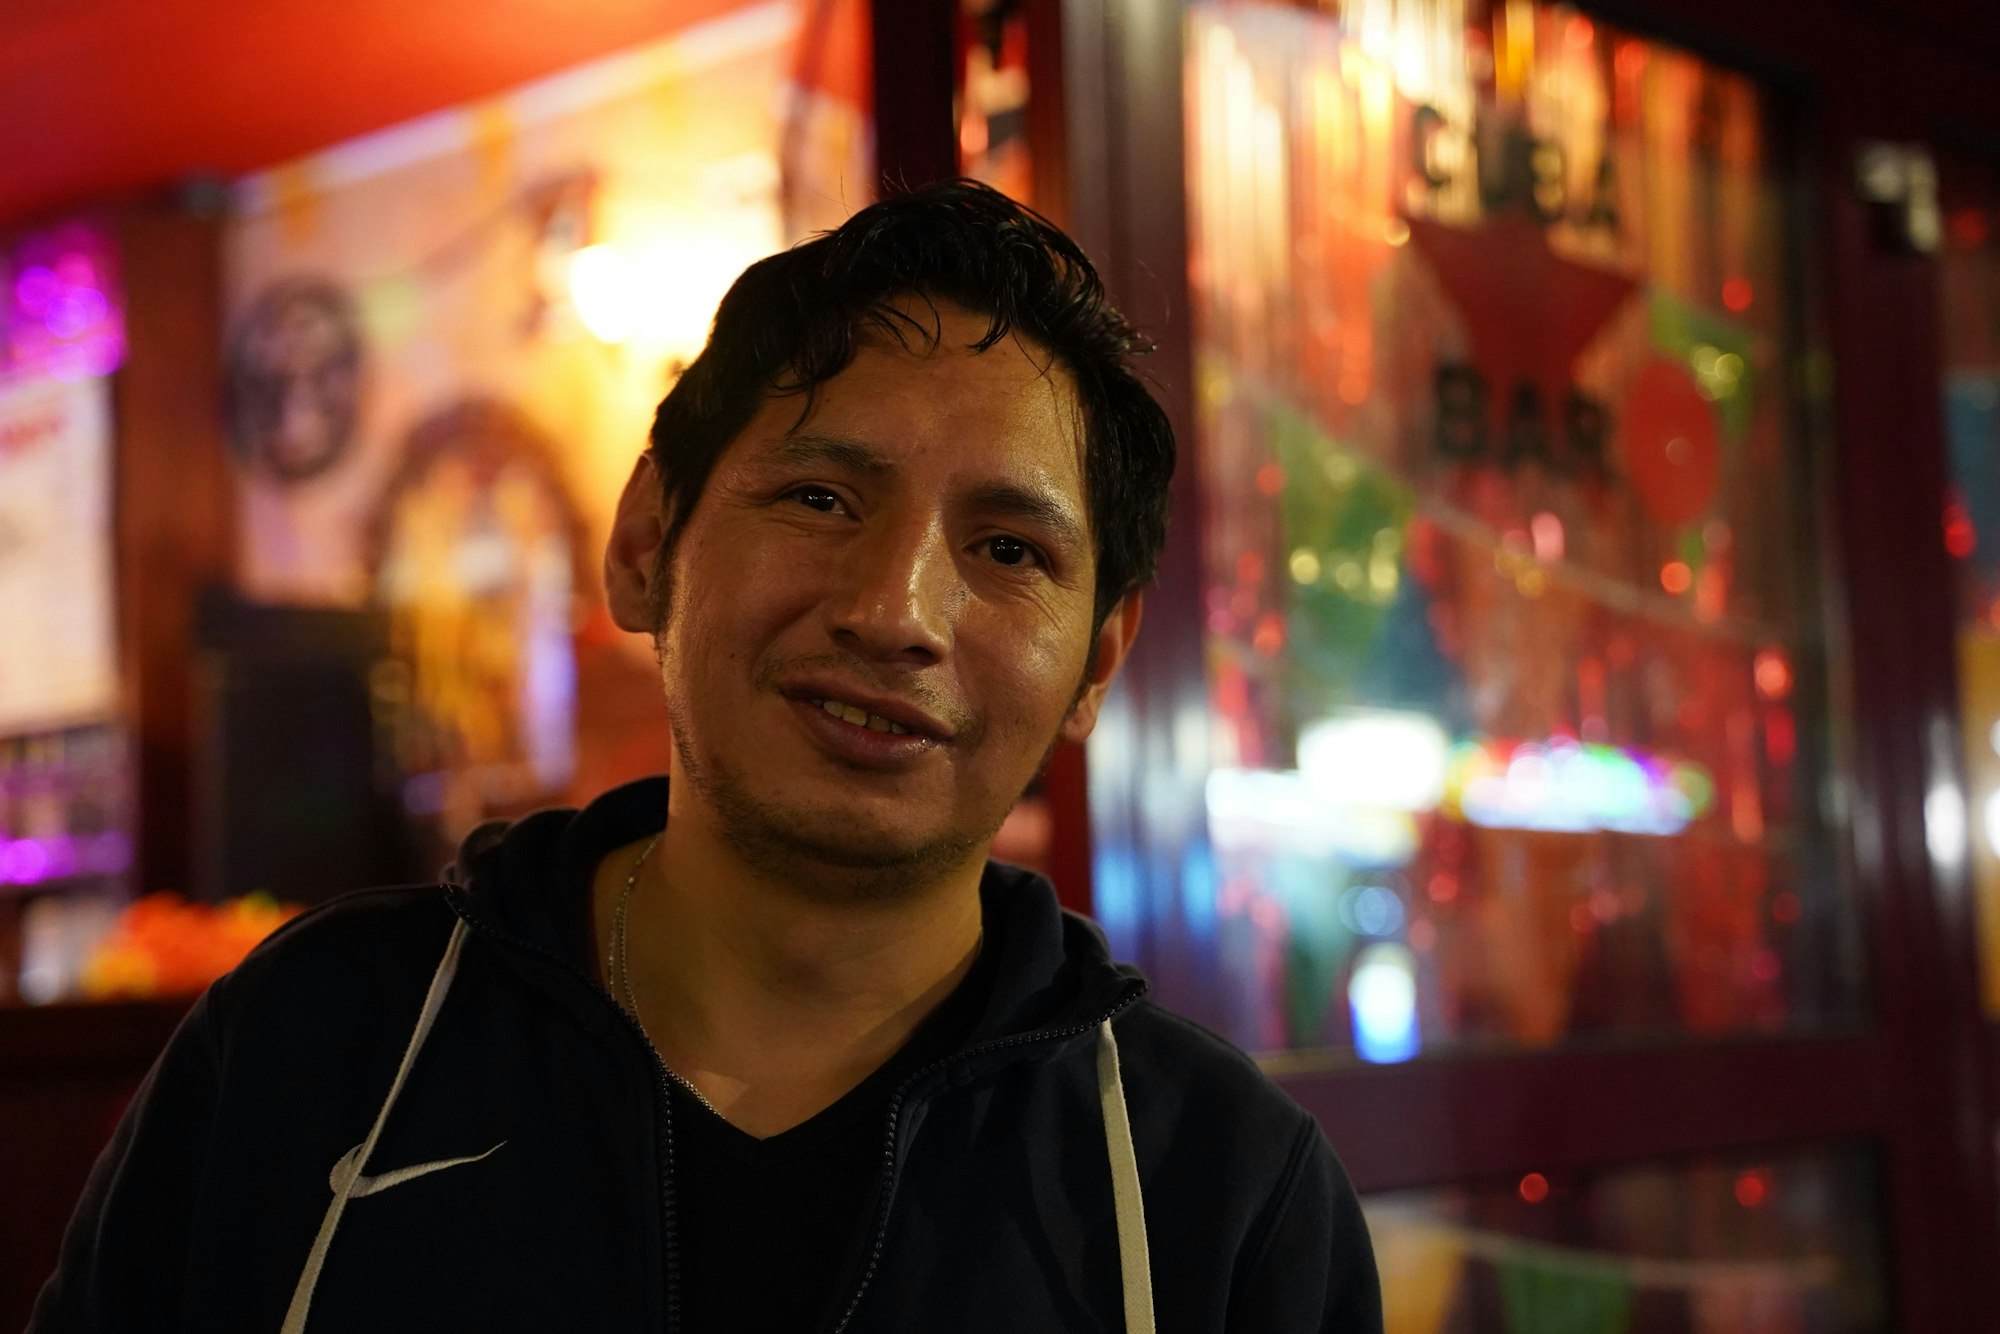 Barkeeper "Latino" von der Cuba Bar auf der Zülpicher Straße.